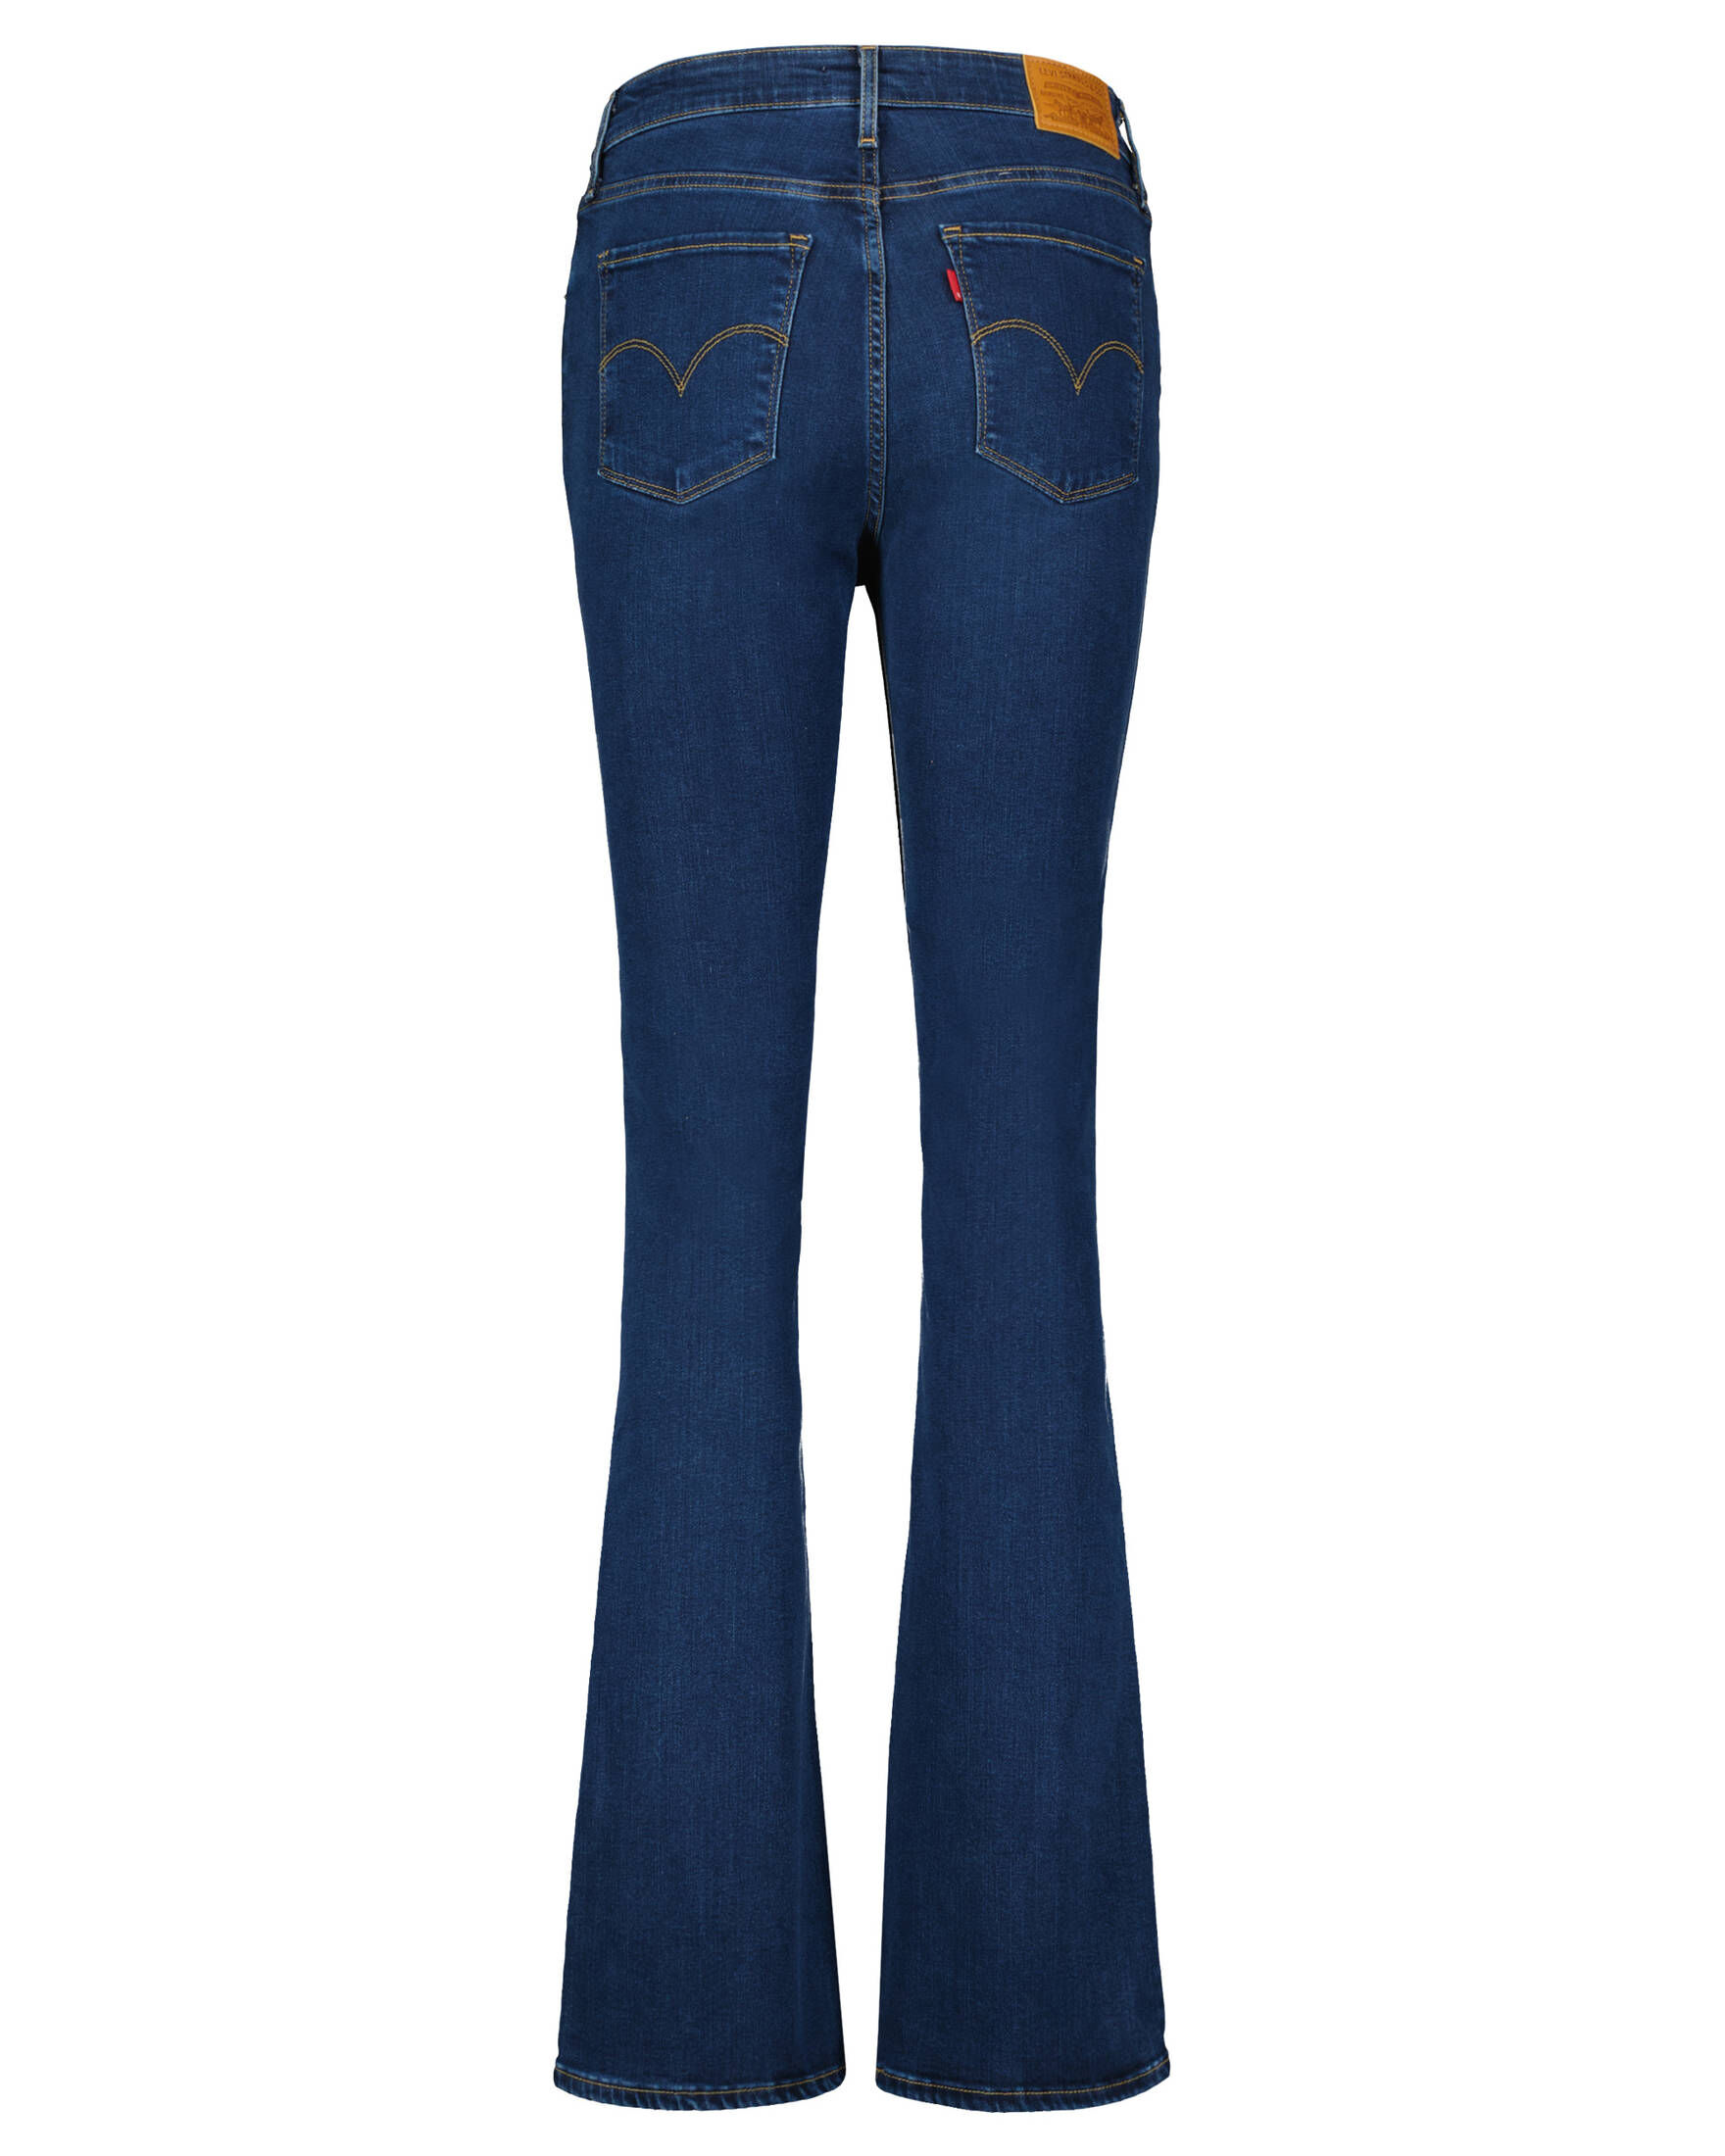 Damen Jeans 725 HIGH-RISE BOOTCUT verkürzt | engelhorn